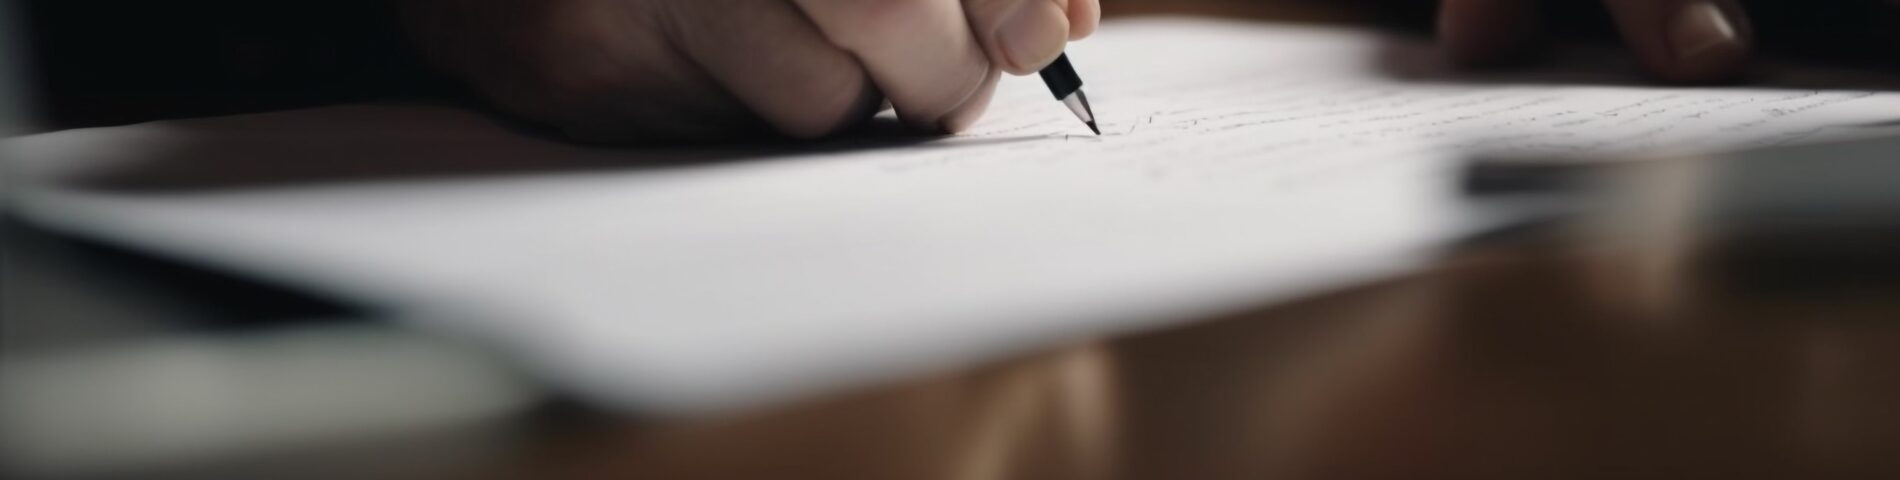 Hombre escribiendo sobre papel con bolígrafo.